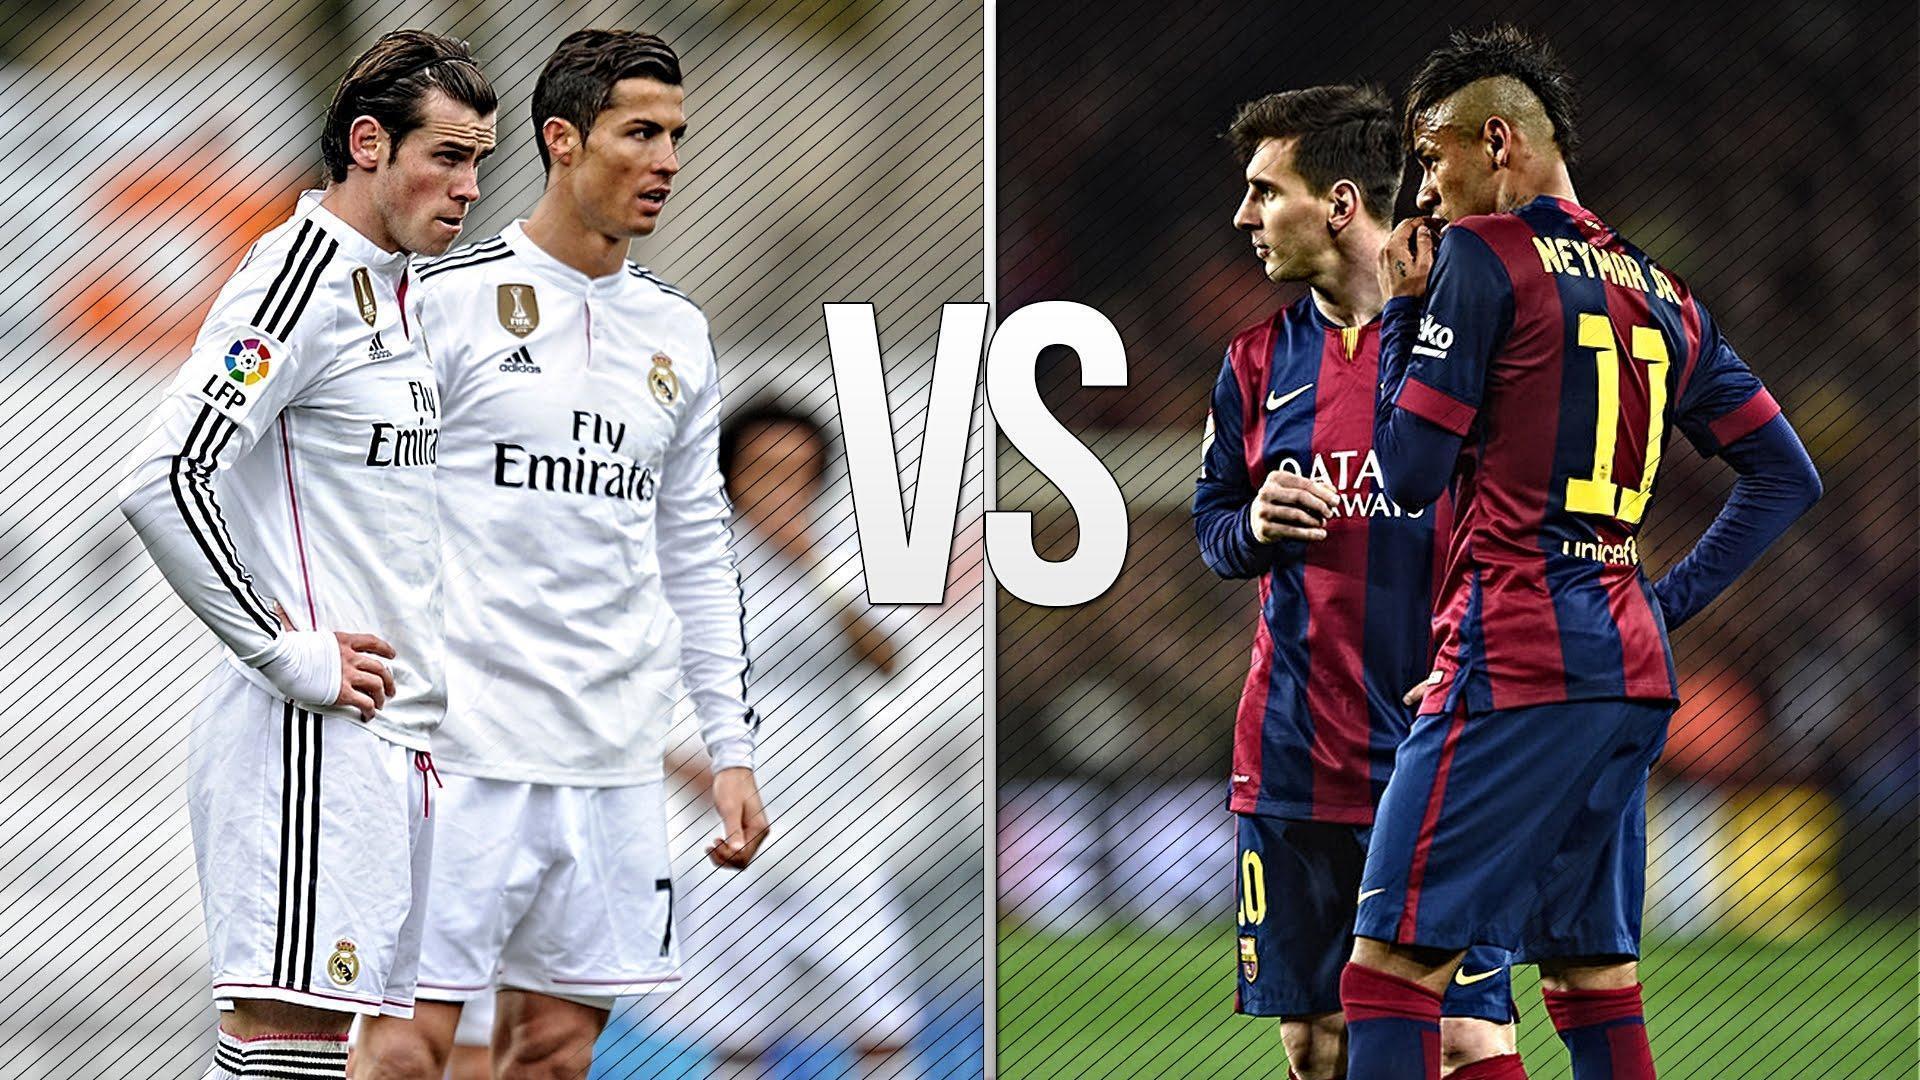 Cristiano Ronaldo & Gareth Bale vs Lionel Messi & Neymar ●THE